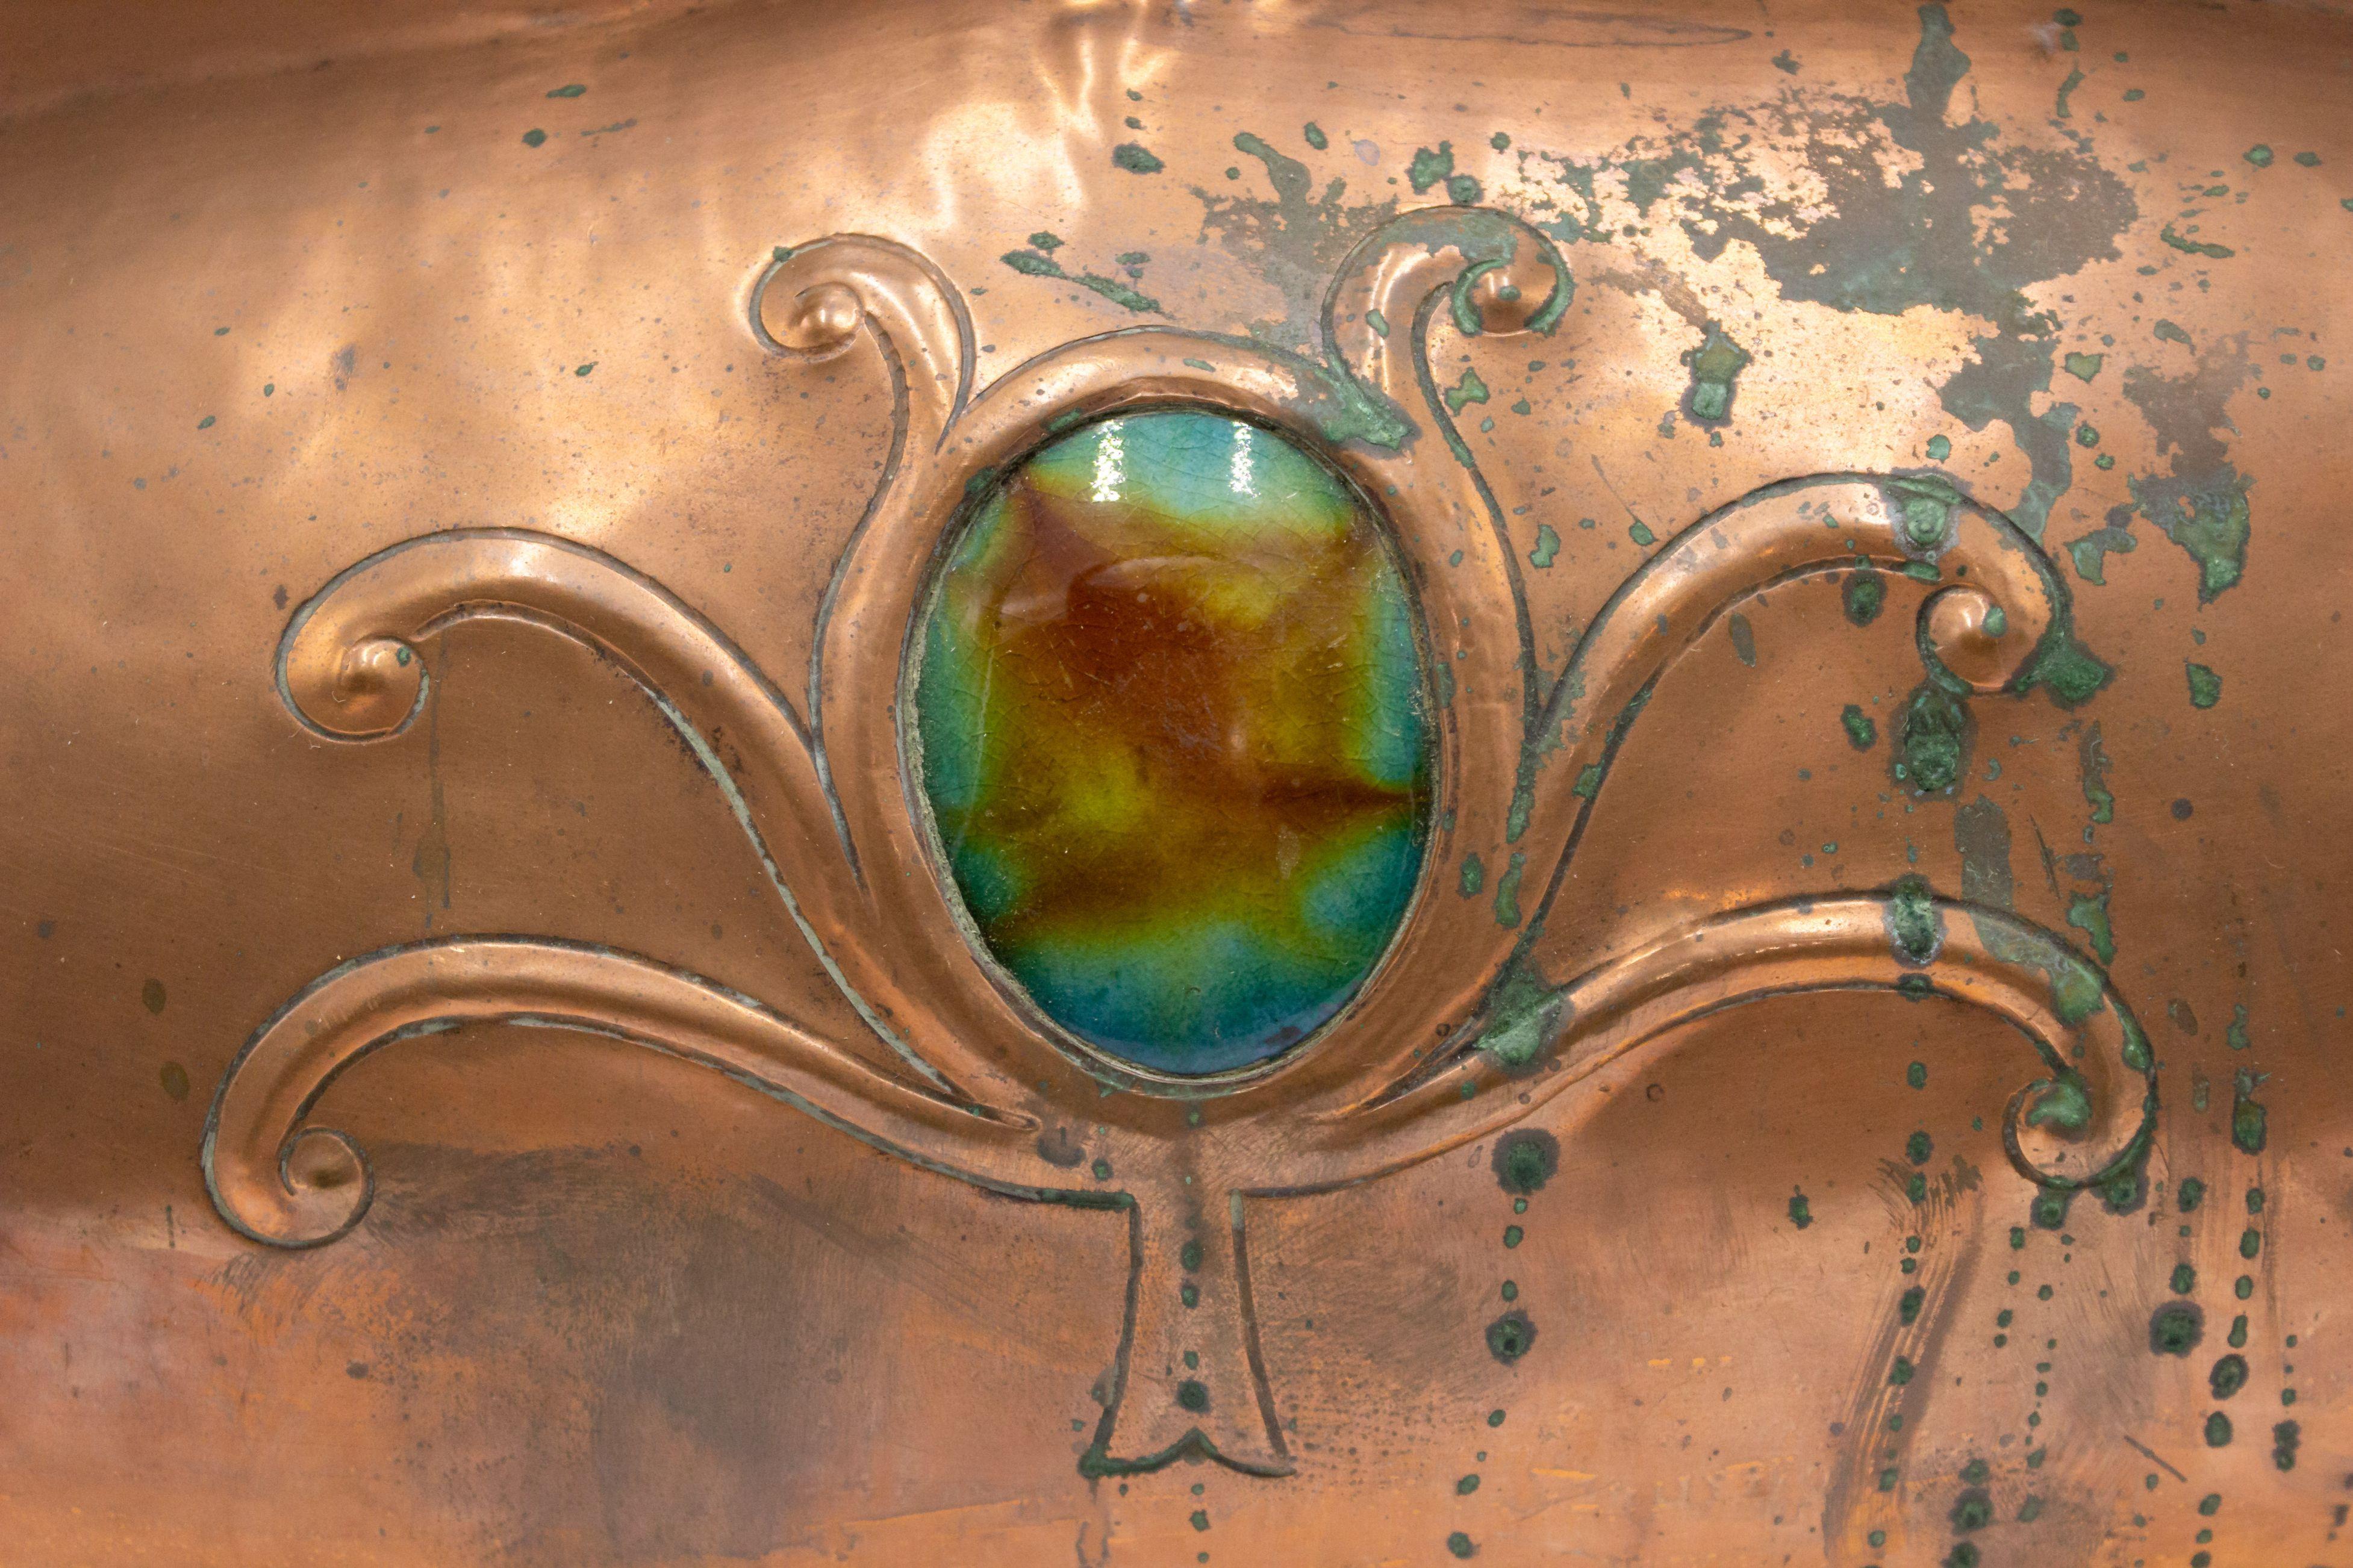 Grand coffre de table ou boîte en cuivre du mouvement Arts & Crafts anglais qui présente des saillies curvilignes de chaque côté, ainsi qu'un médaillon décoratif en émail vert sur le couvercle et la façade.